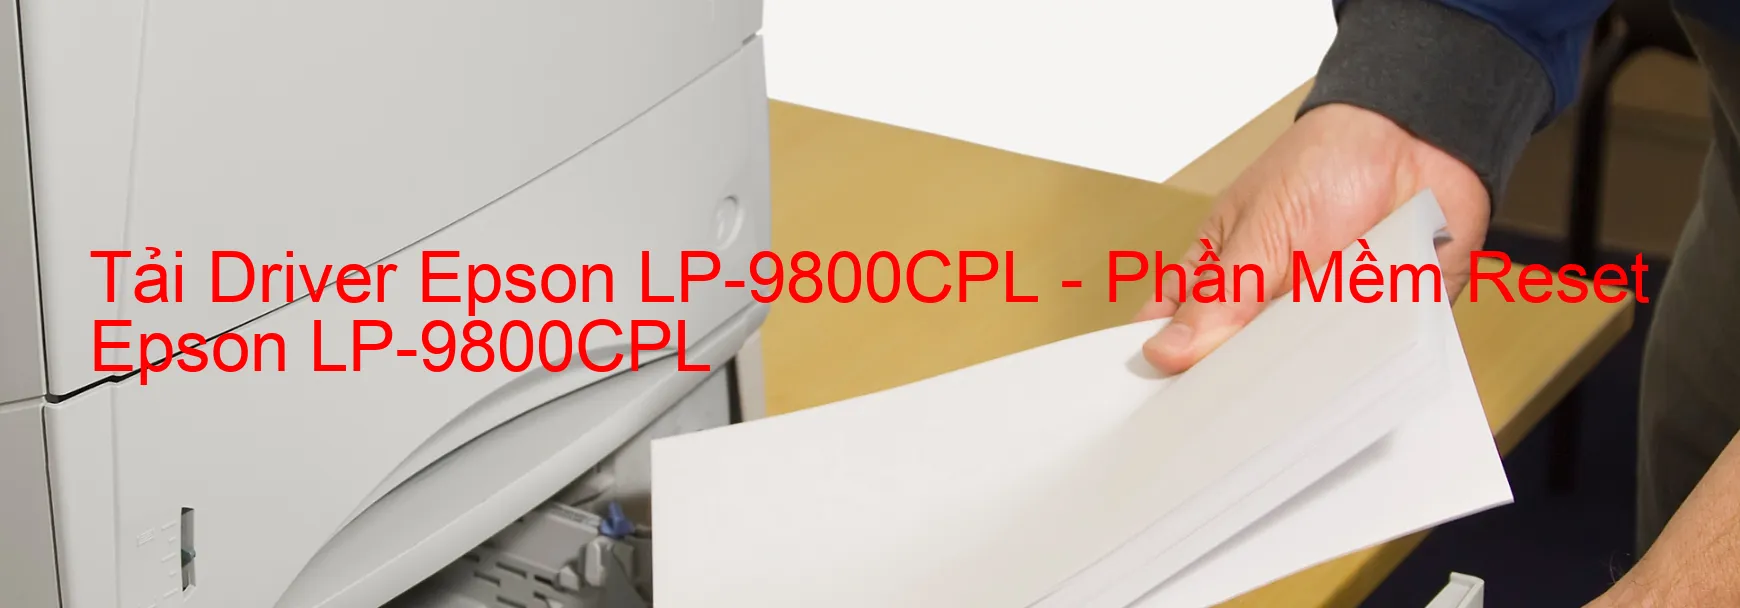 Driver Epson LP-9800CPL, Phần Mềm Reset Epson LP-9800CPL